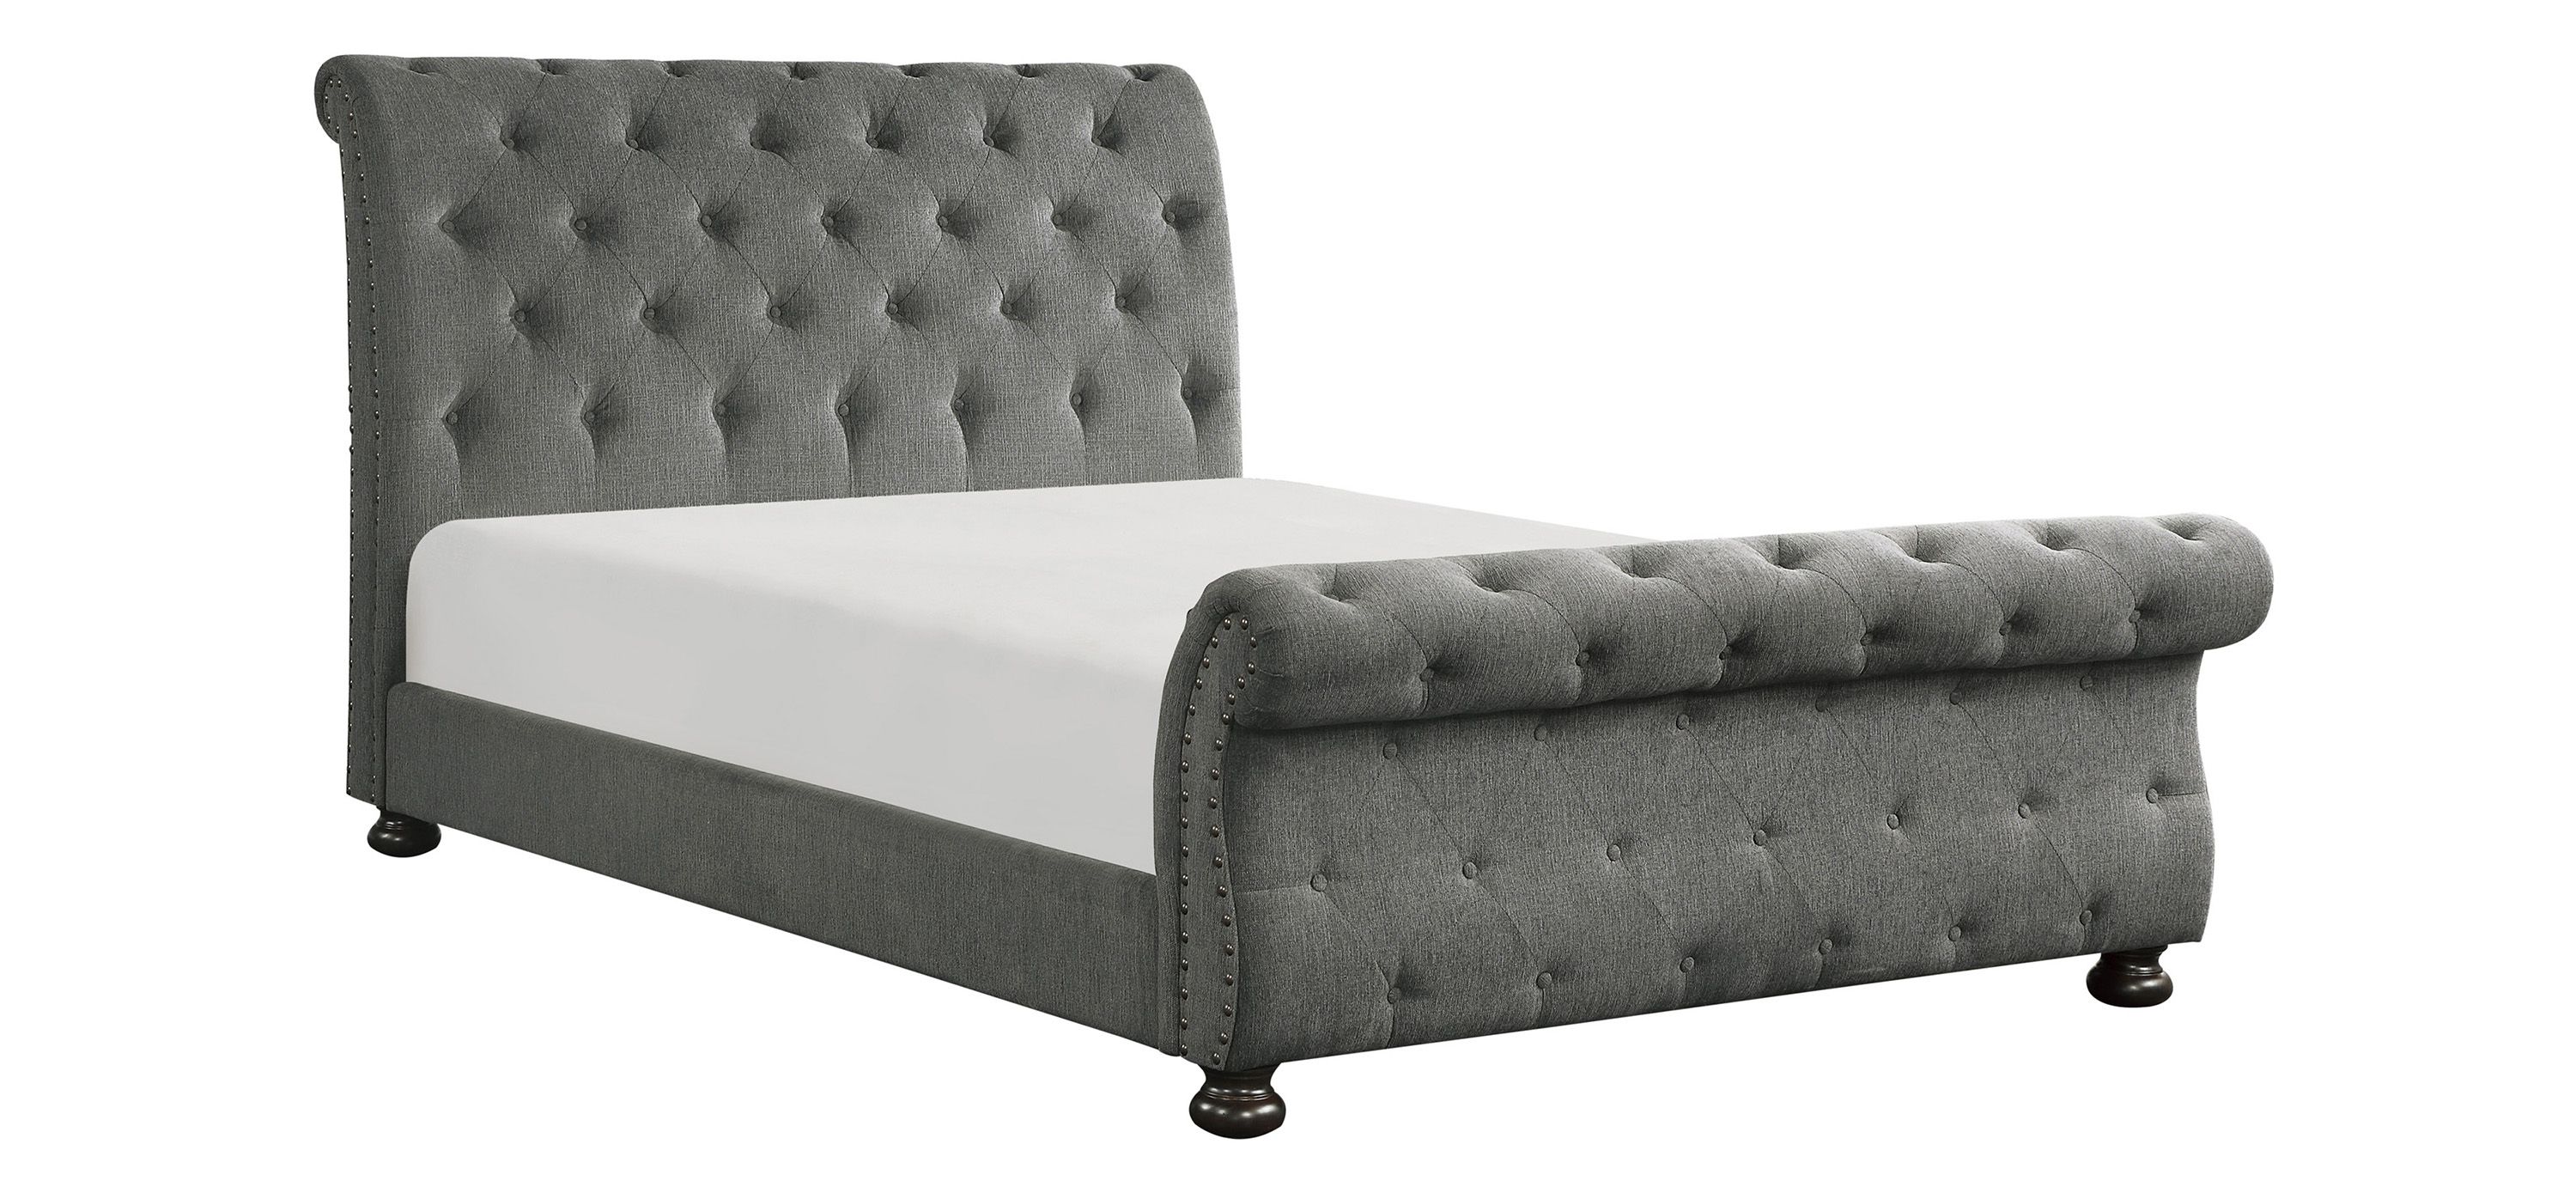 Sanders Upholstered Bed